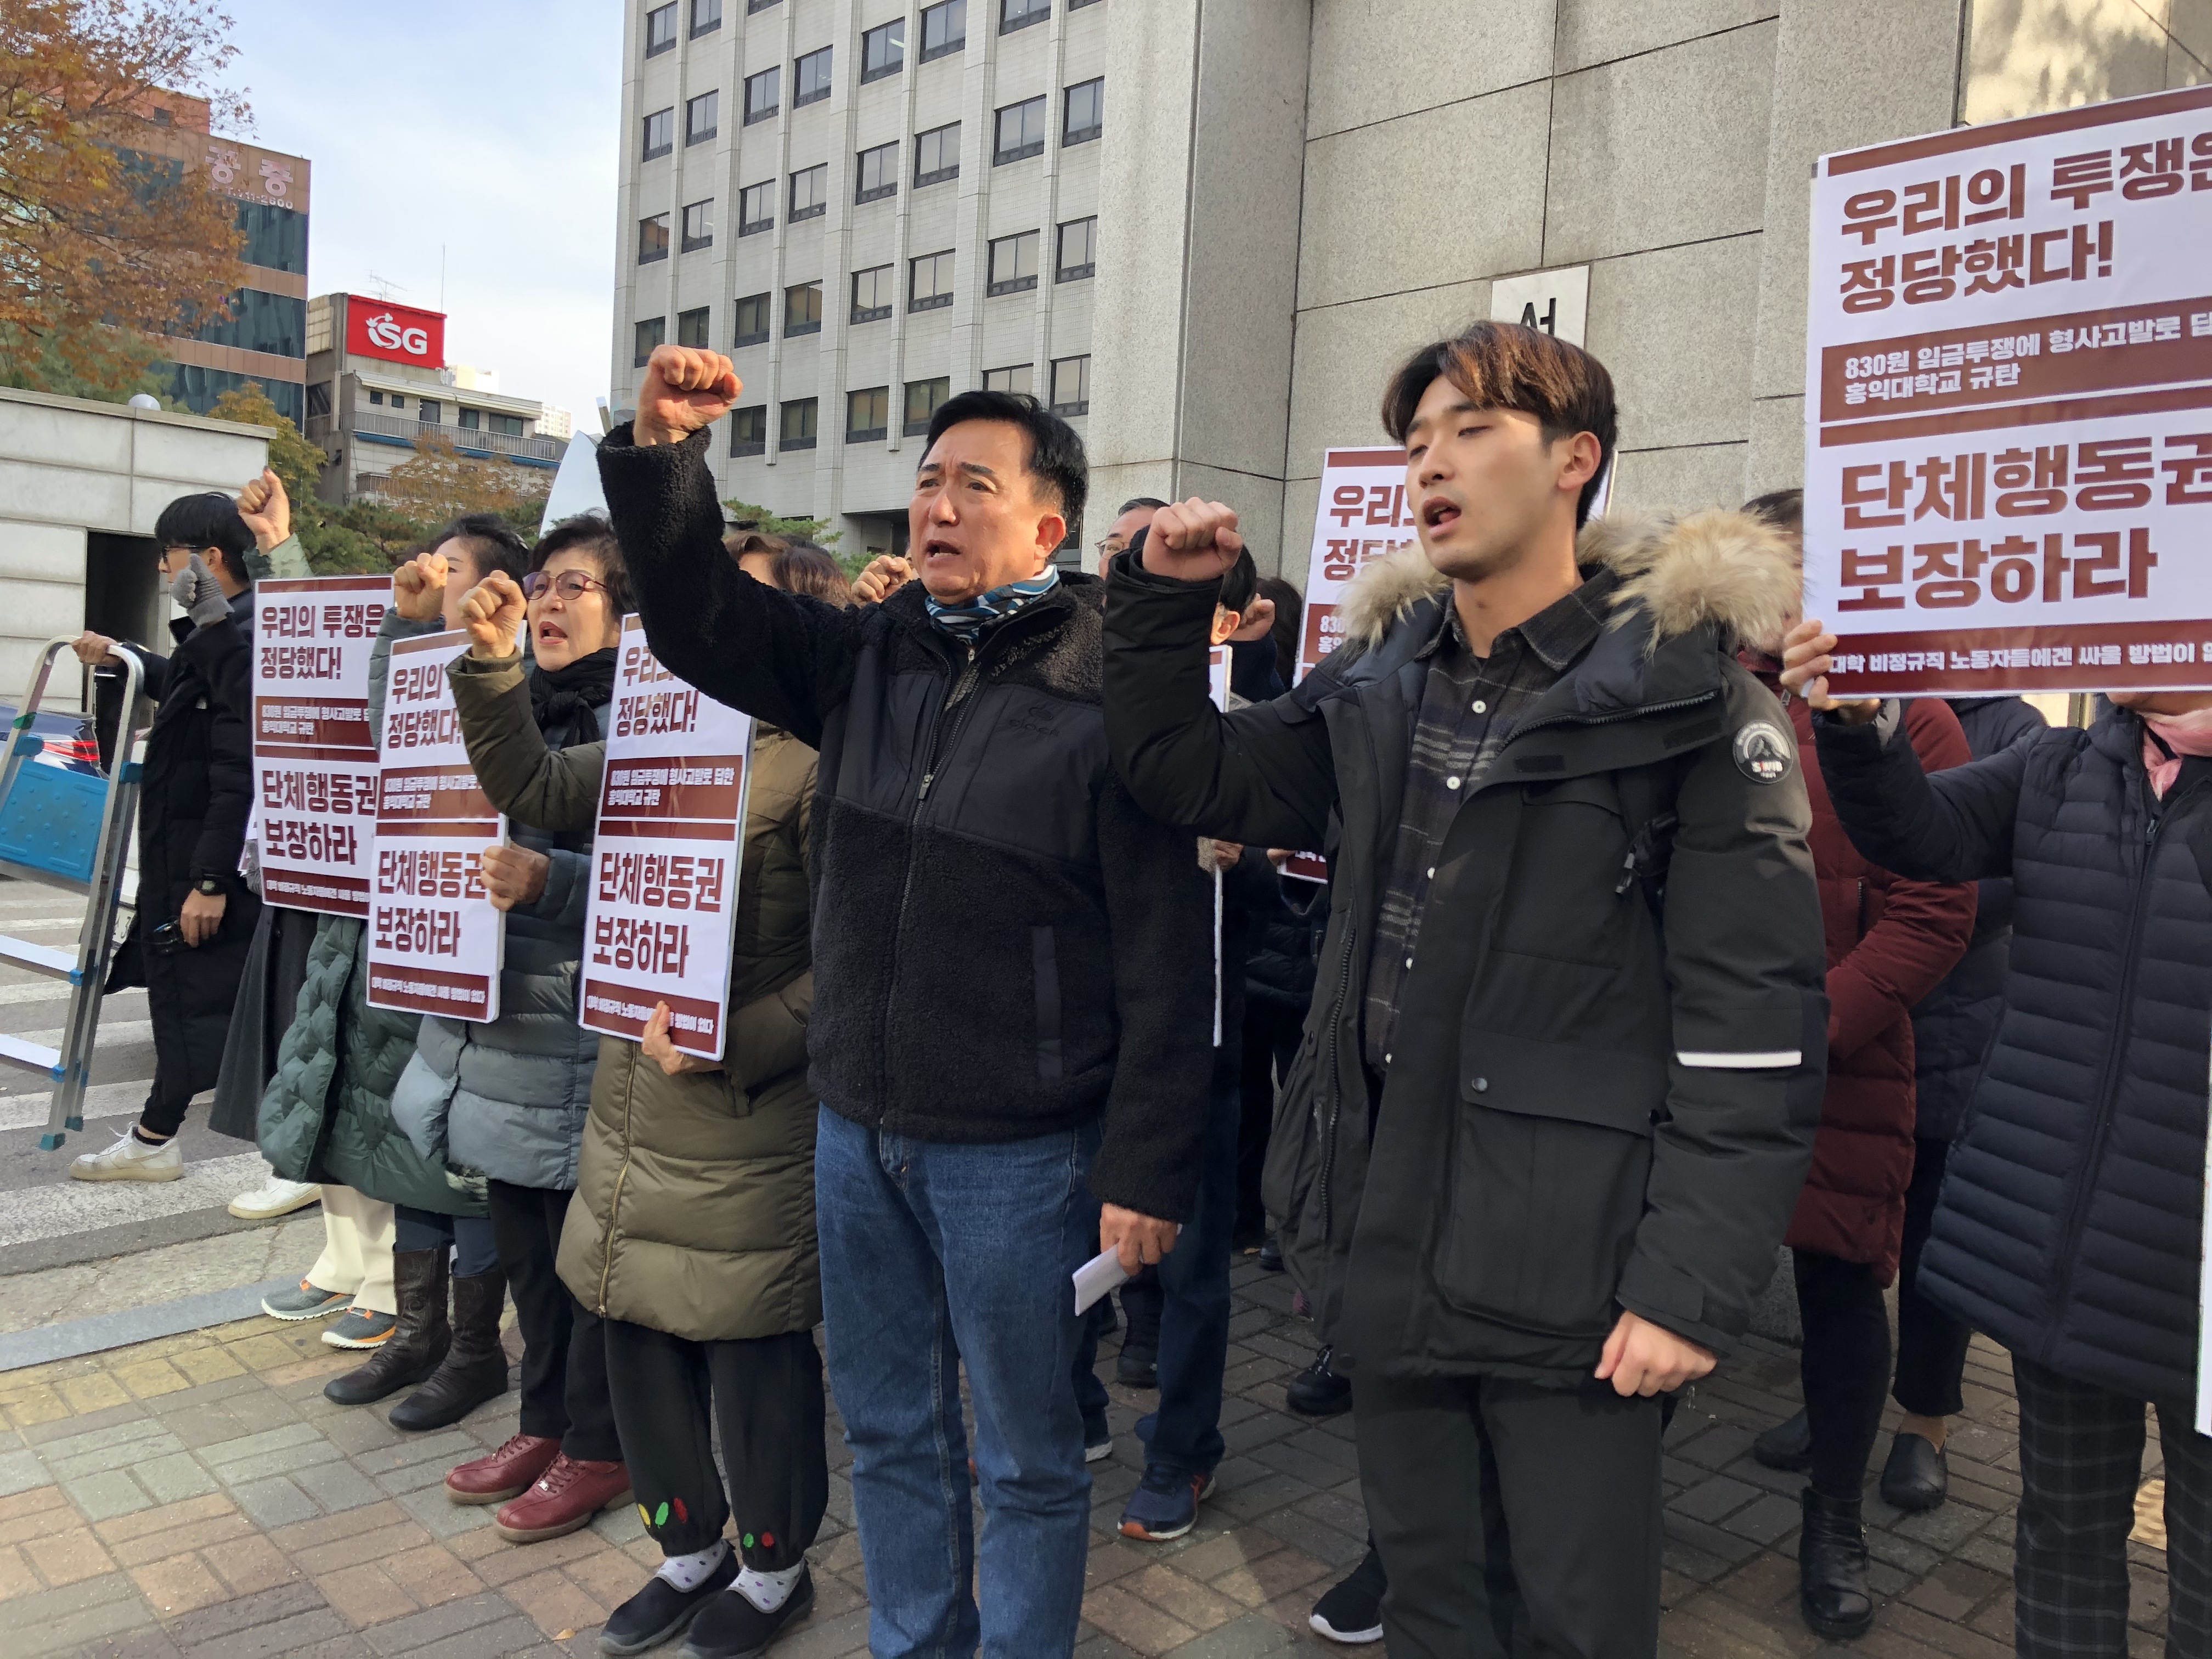 21일 홍익대 노동자와 학생 연대단체인‘모닥불’과 공공운수노조 홍익대분회 조합원들이 항소심 선고 직후 서울서부지법 앞에서 기자회견을 열고 구호를 외치고 있다.